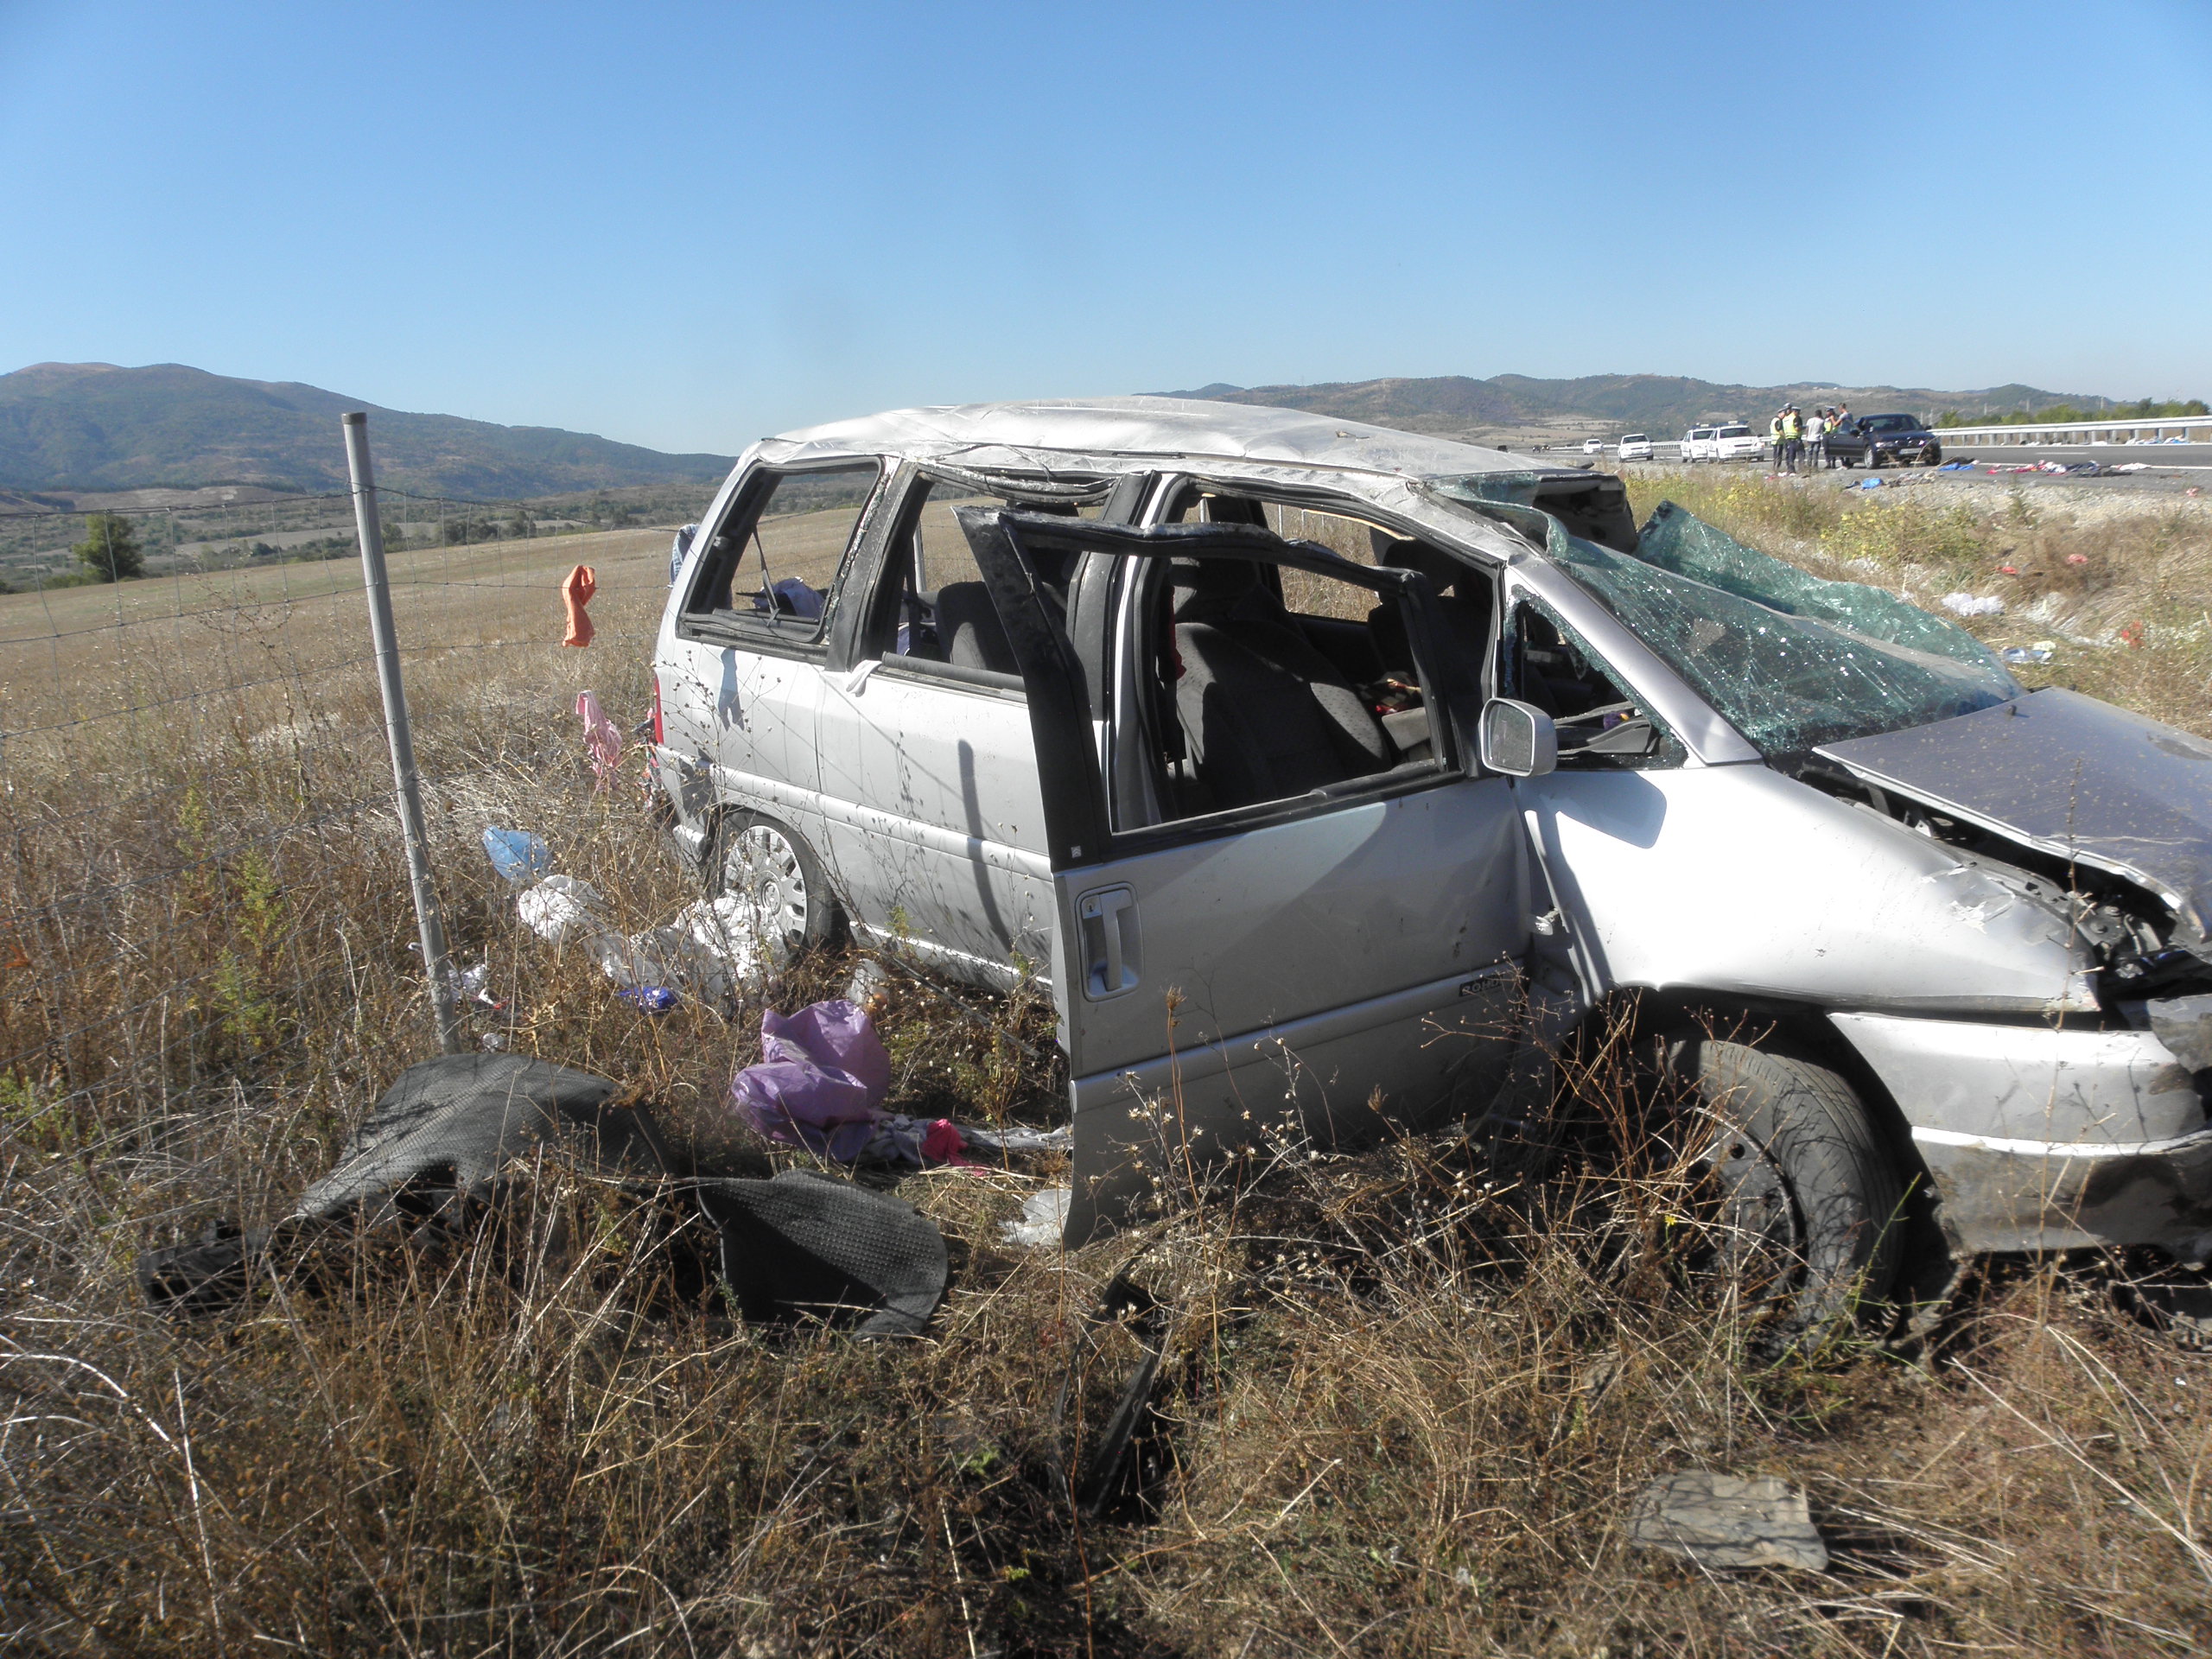 Лек автомобил с плевенска регистрация катастрофира на автомагистрала "Струма". При катастрофата има петима пострадали.